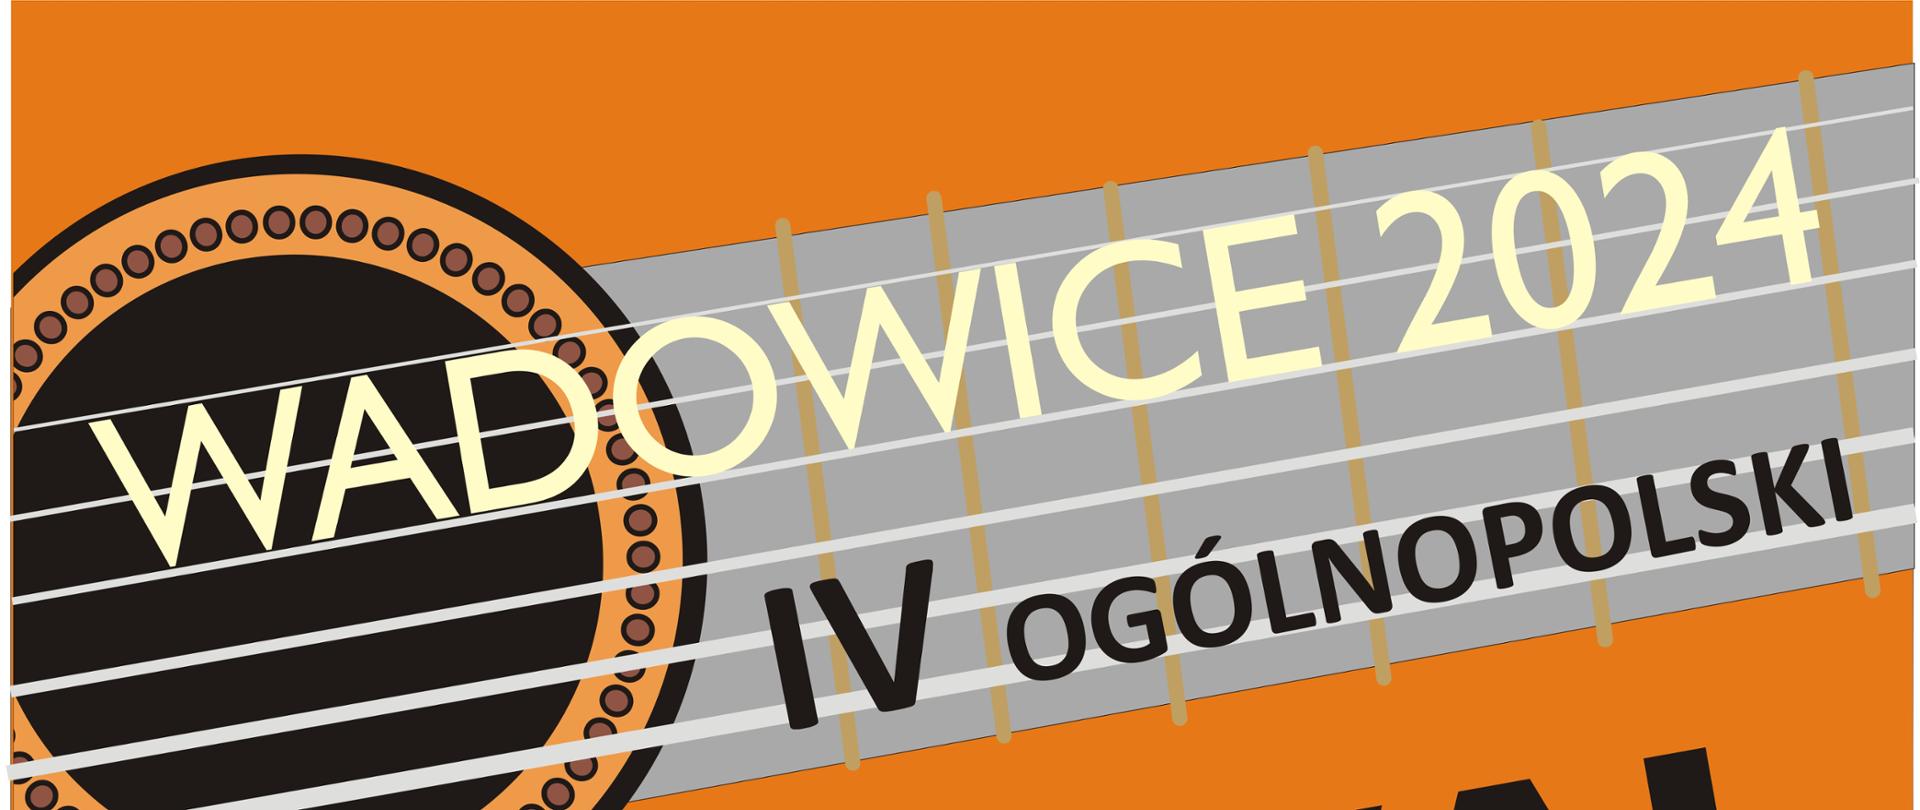 Ogólnopolski Festiwal Gitarowy - Wadowice 2024, który odbędzie się od 12 do 14 kwietnia 2024 roku.